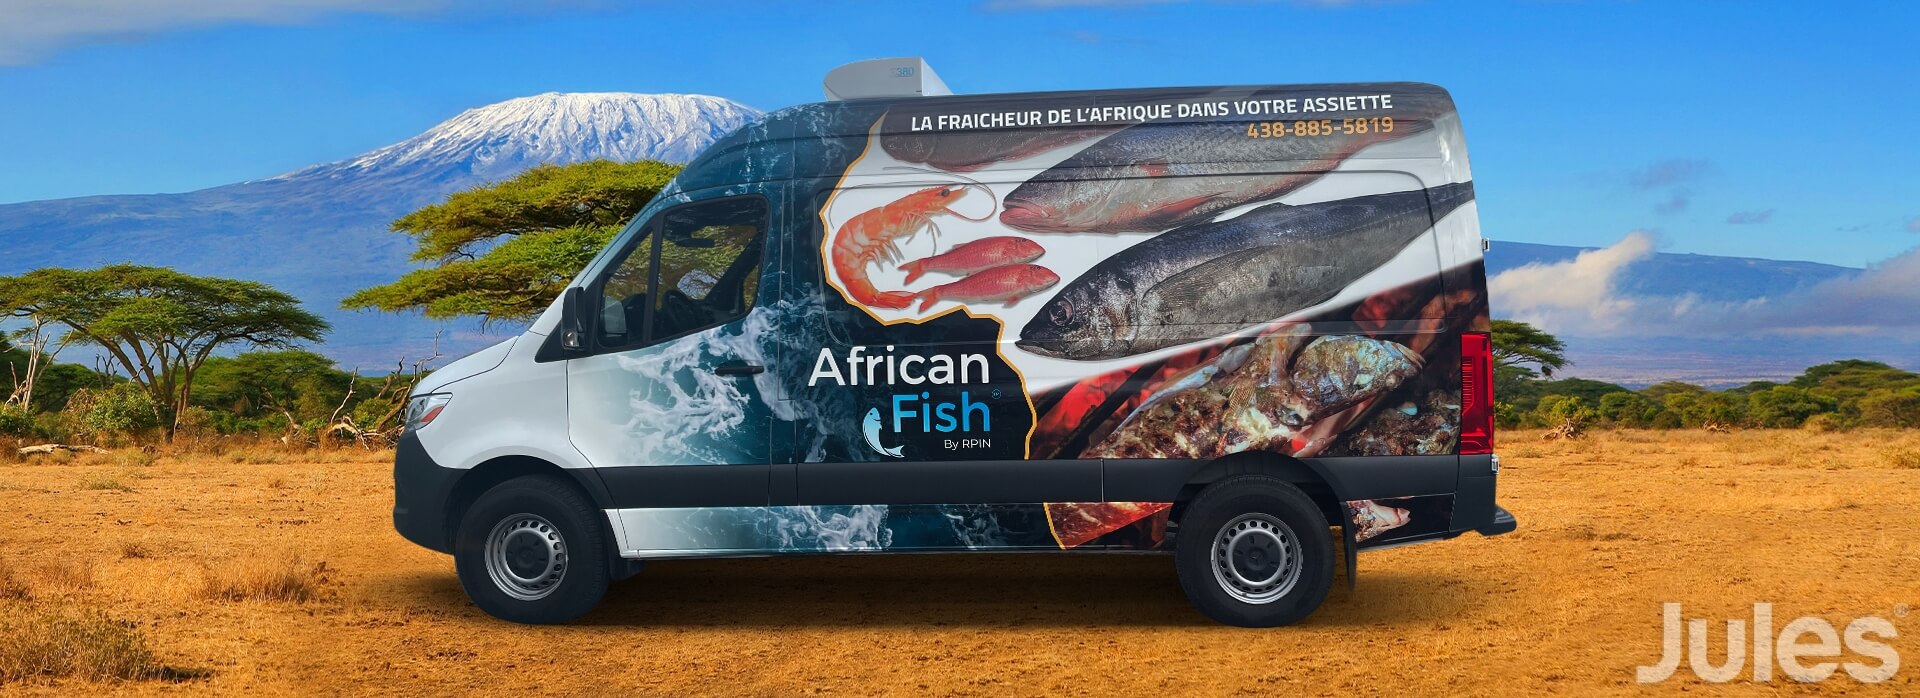 Lettrage mercedes sprinter african fish nourriture africaine